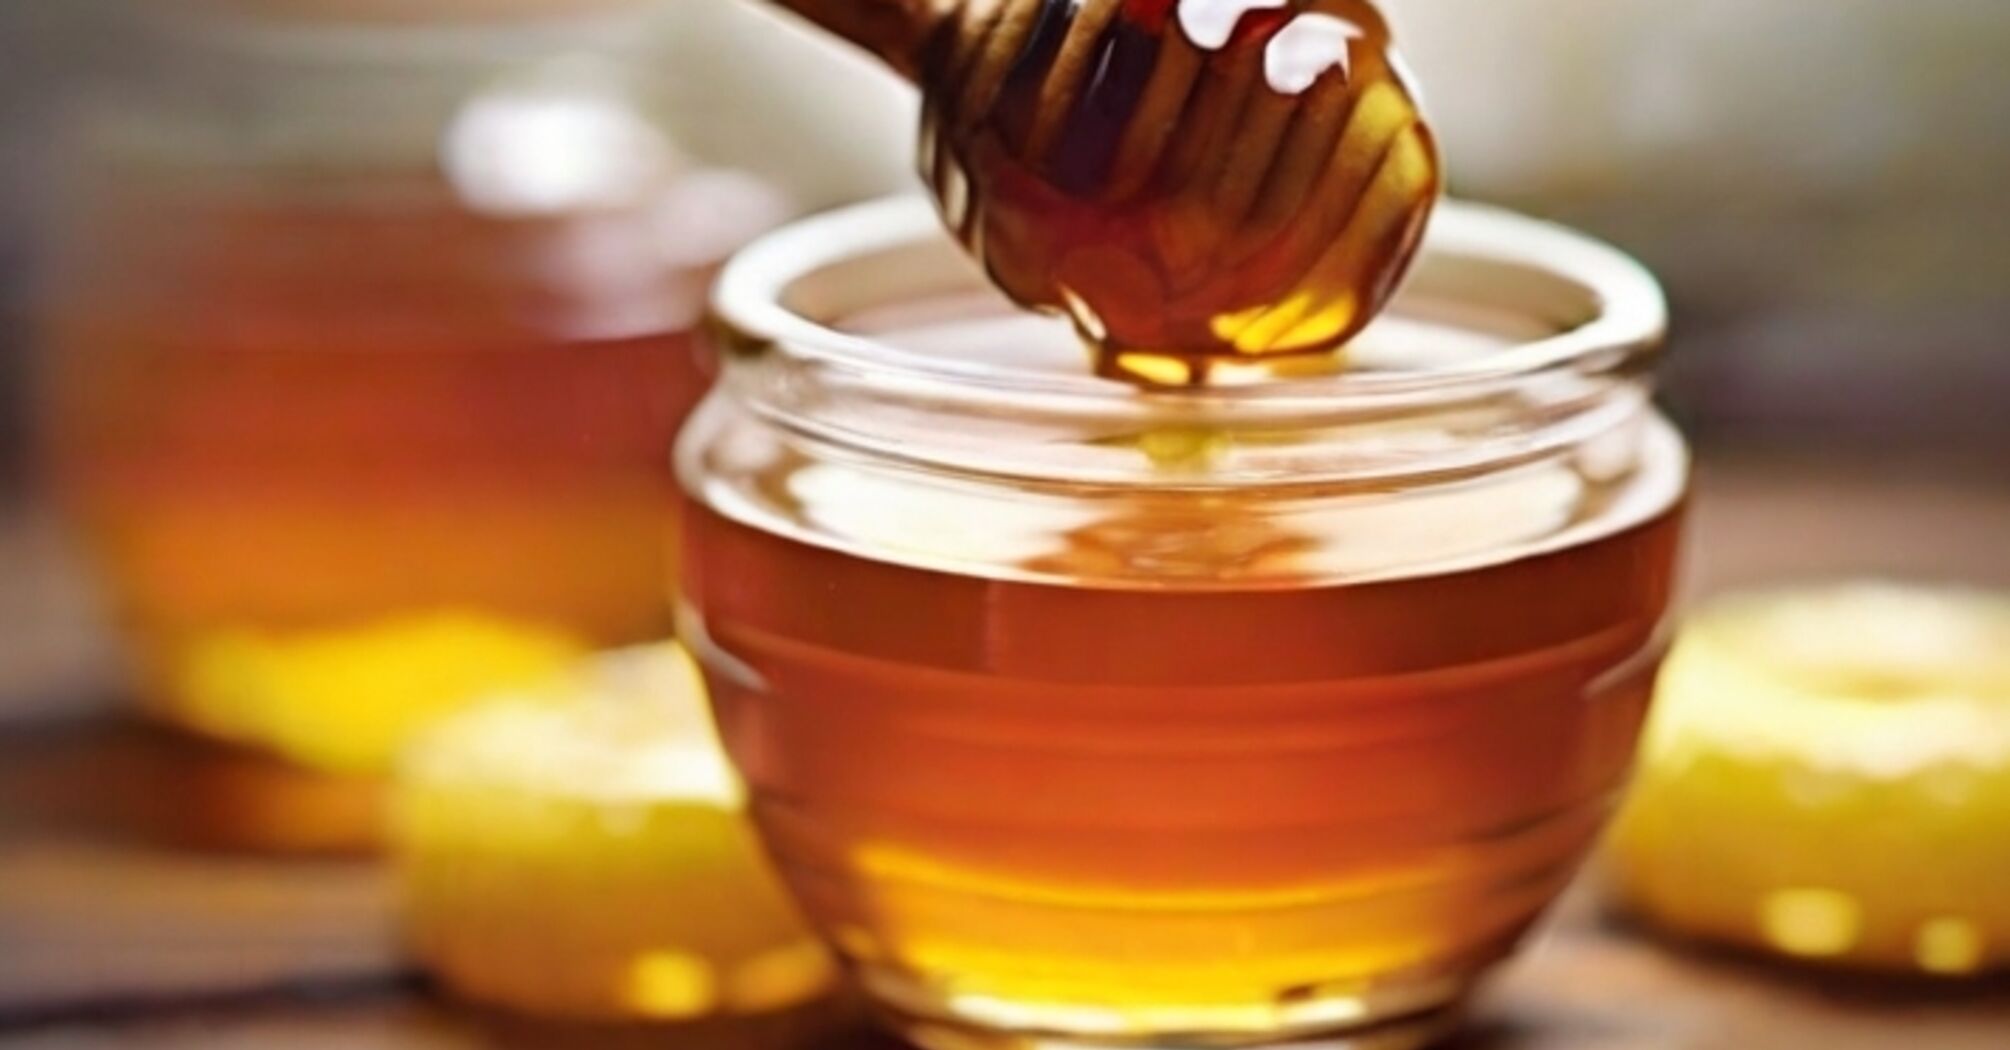 Можно ли добавлять мед в горячие напитки?